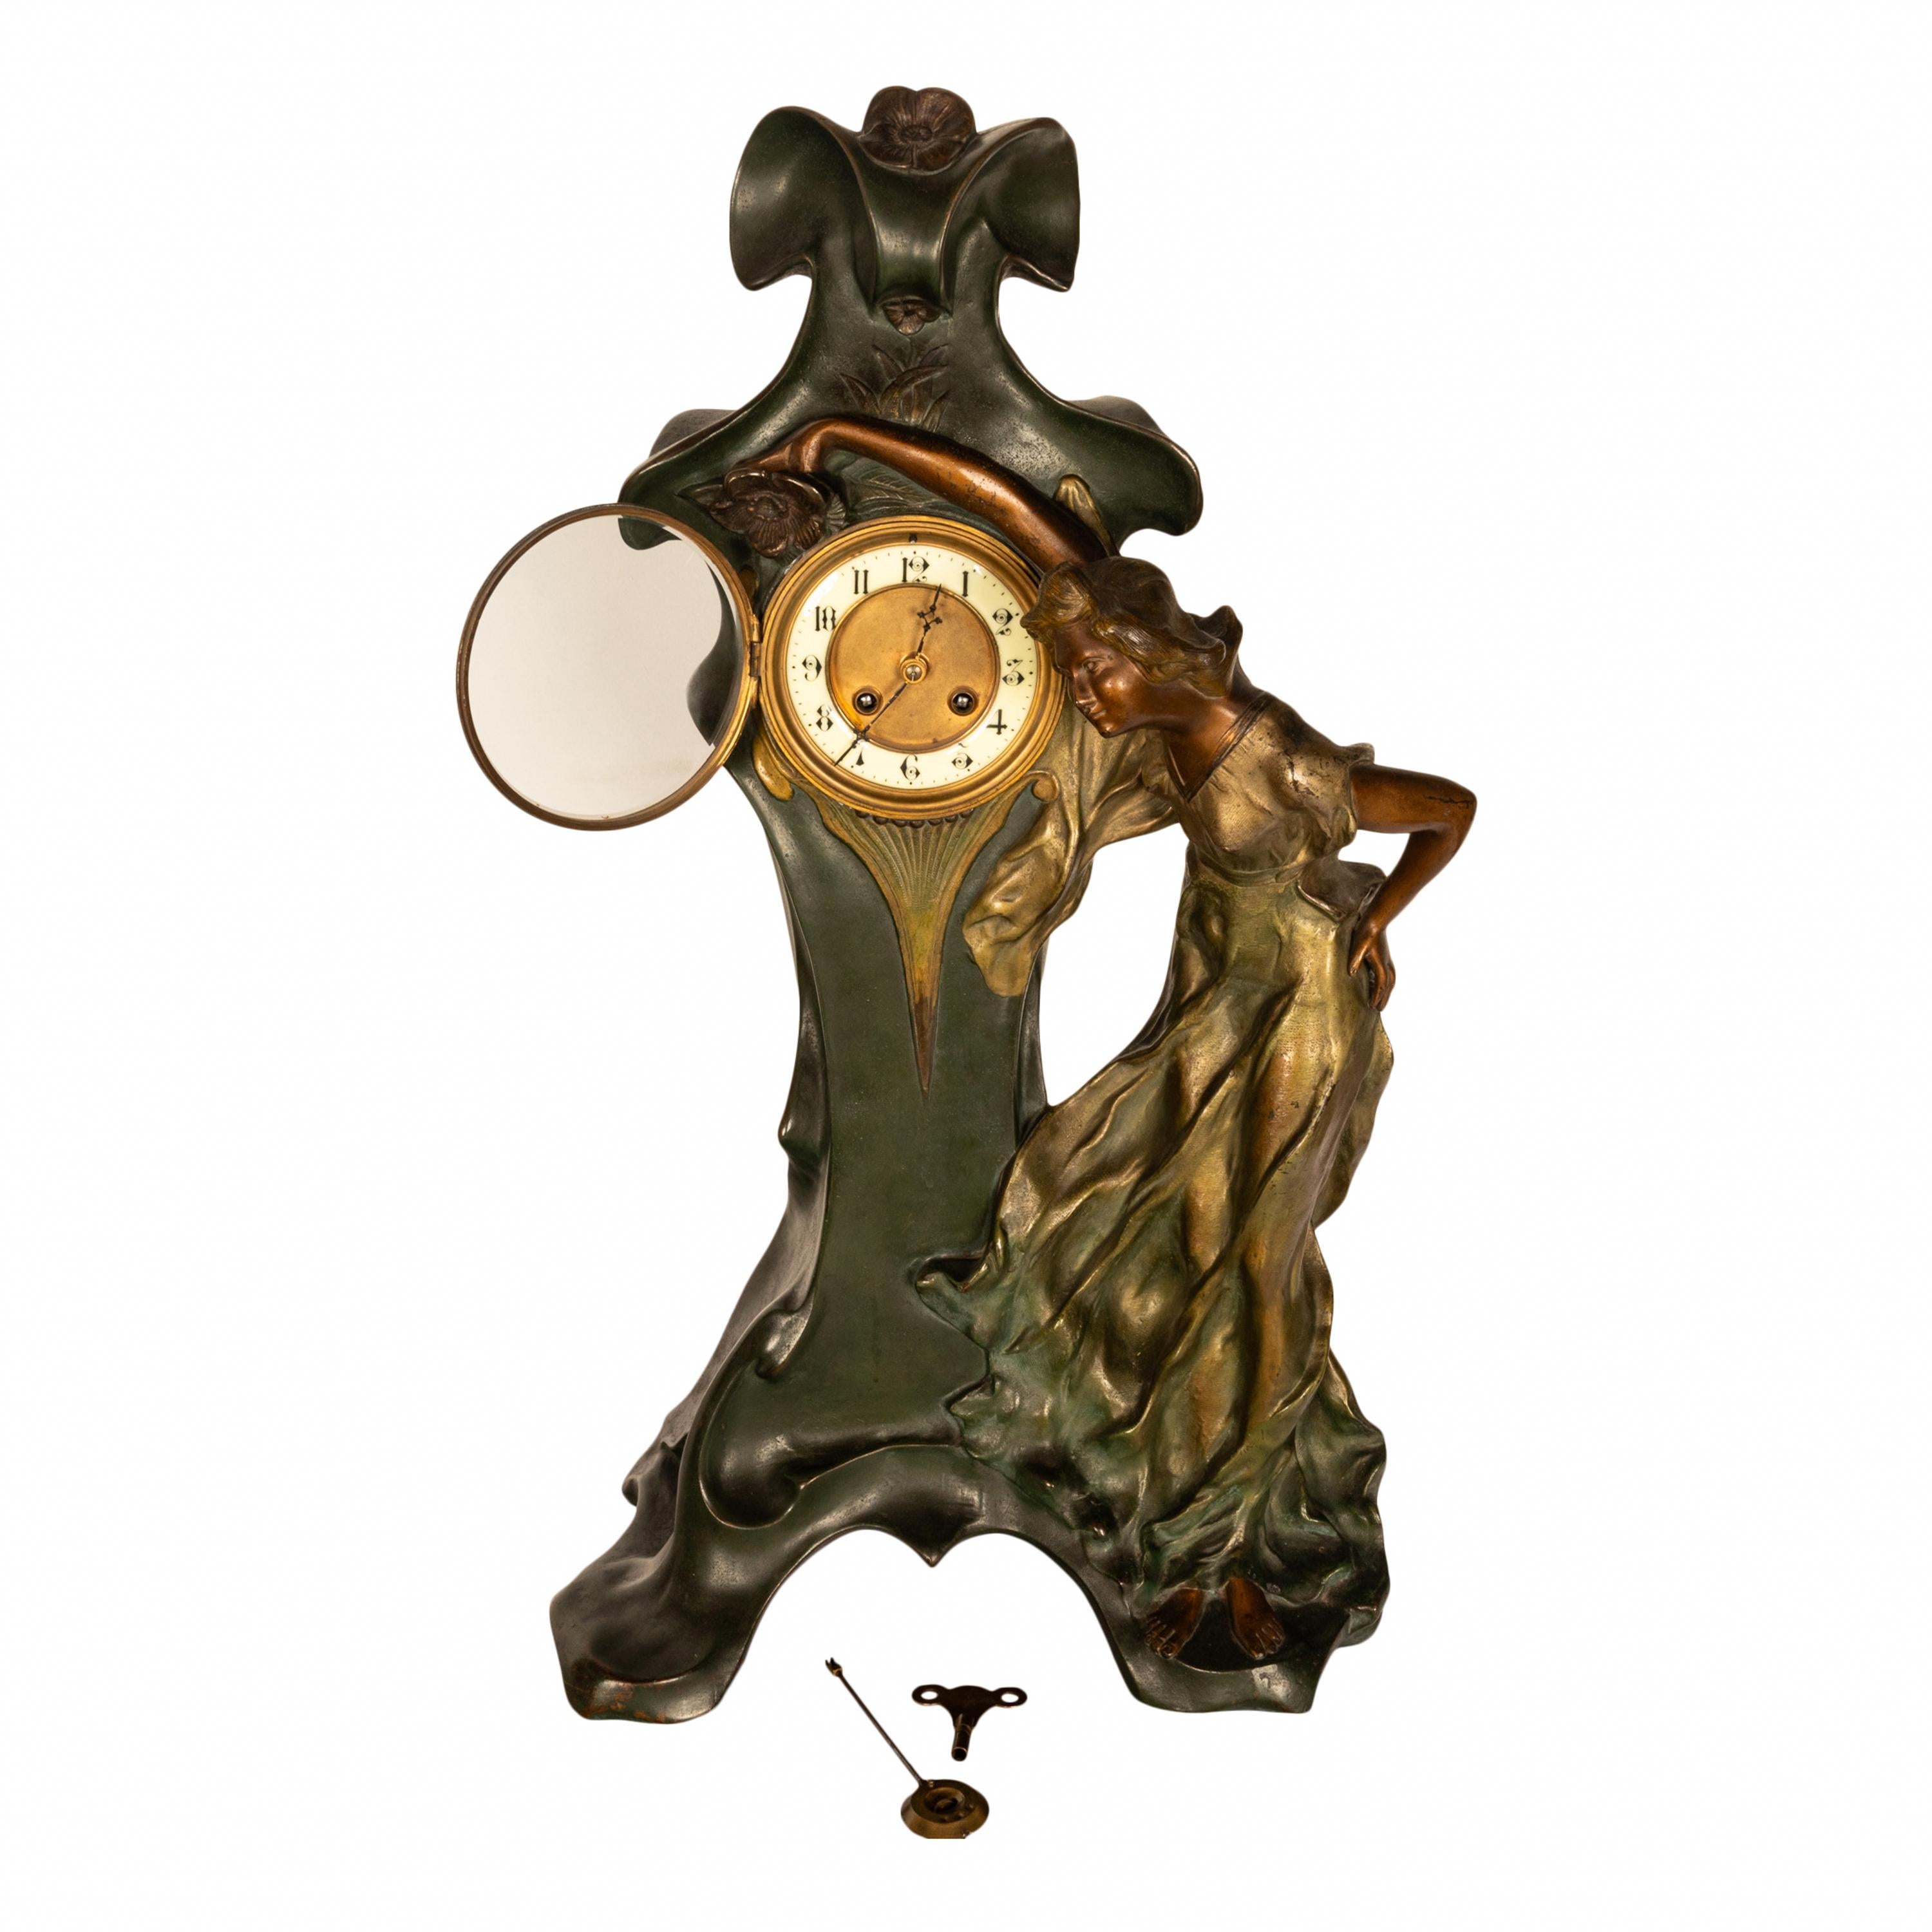 Eine schöne und sehr große antike französische Jugendstil-Figurenuhr, um 1900.
Die Uhr ist aus Bronze gegossen und zeigt ein schönes junges Mädchen in einem durchsichtigen Jugendstilkleid, das sich um das Uhrengehäuse mit einer sehr organischen,